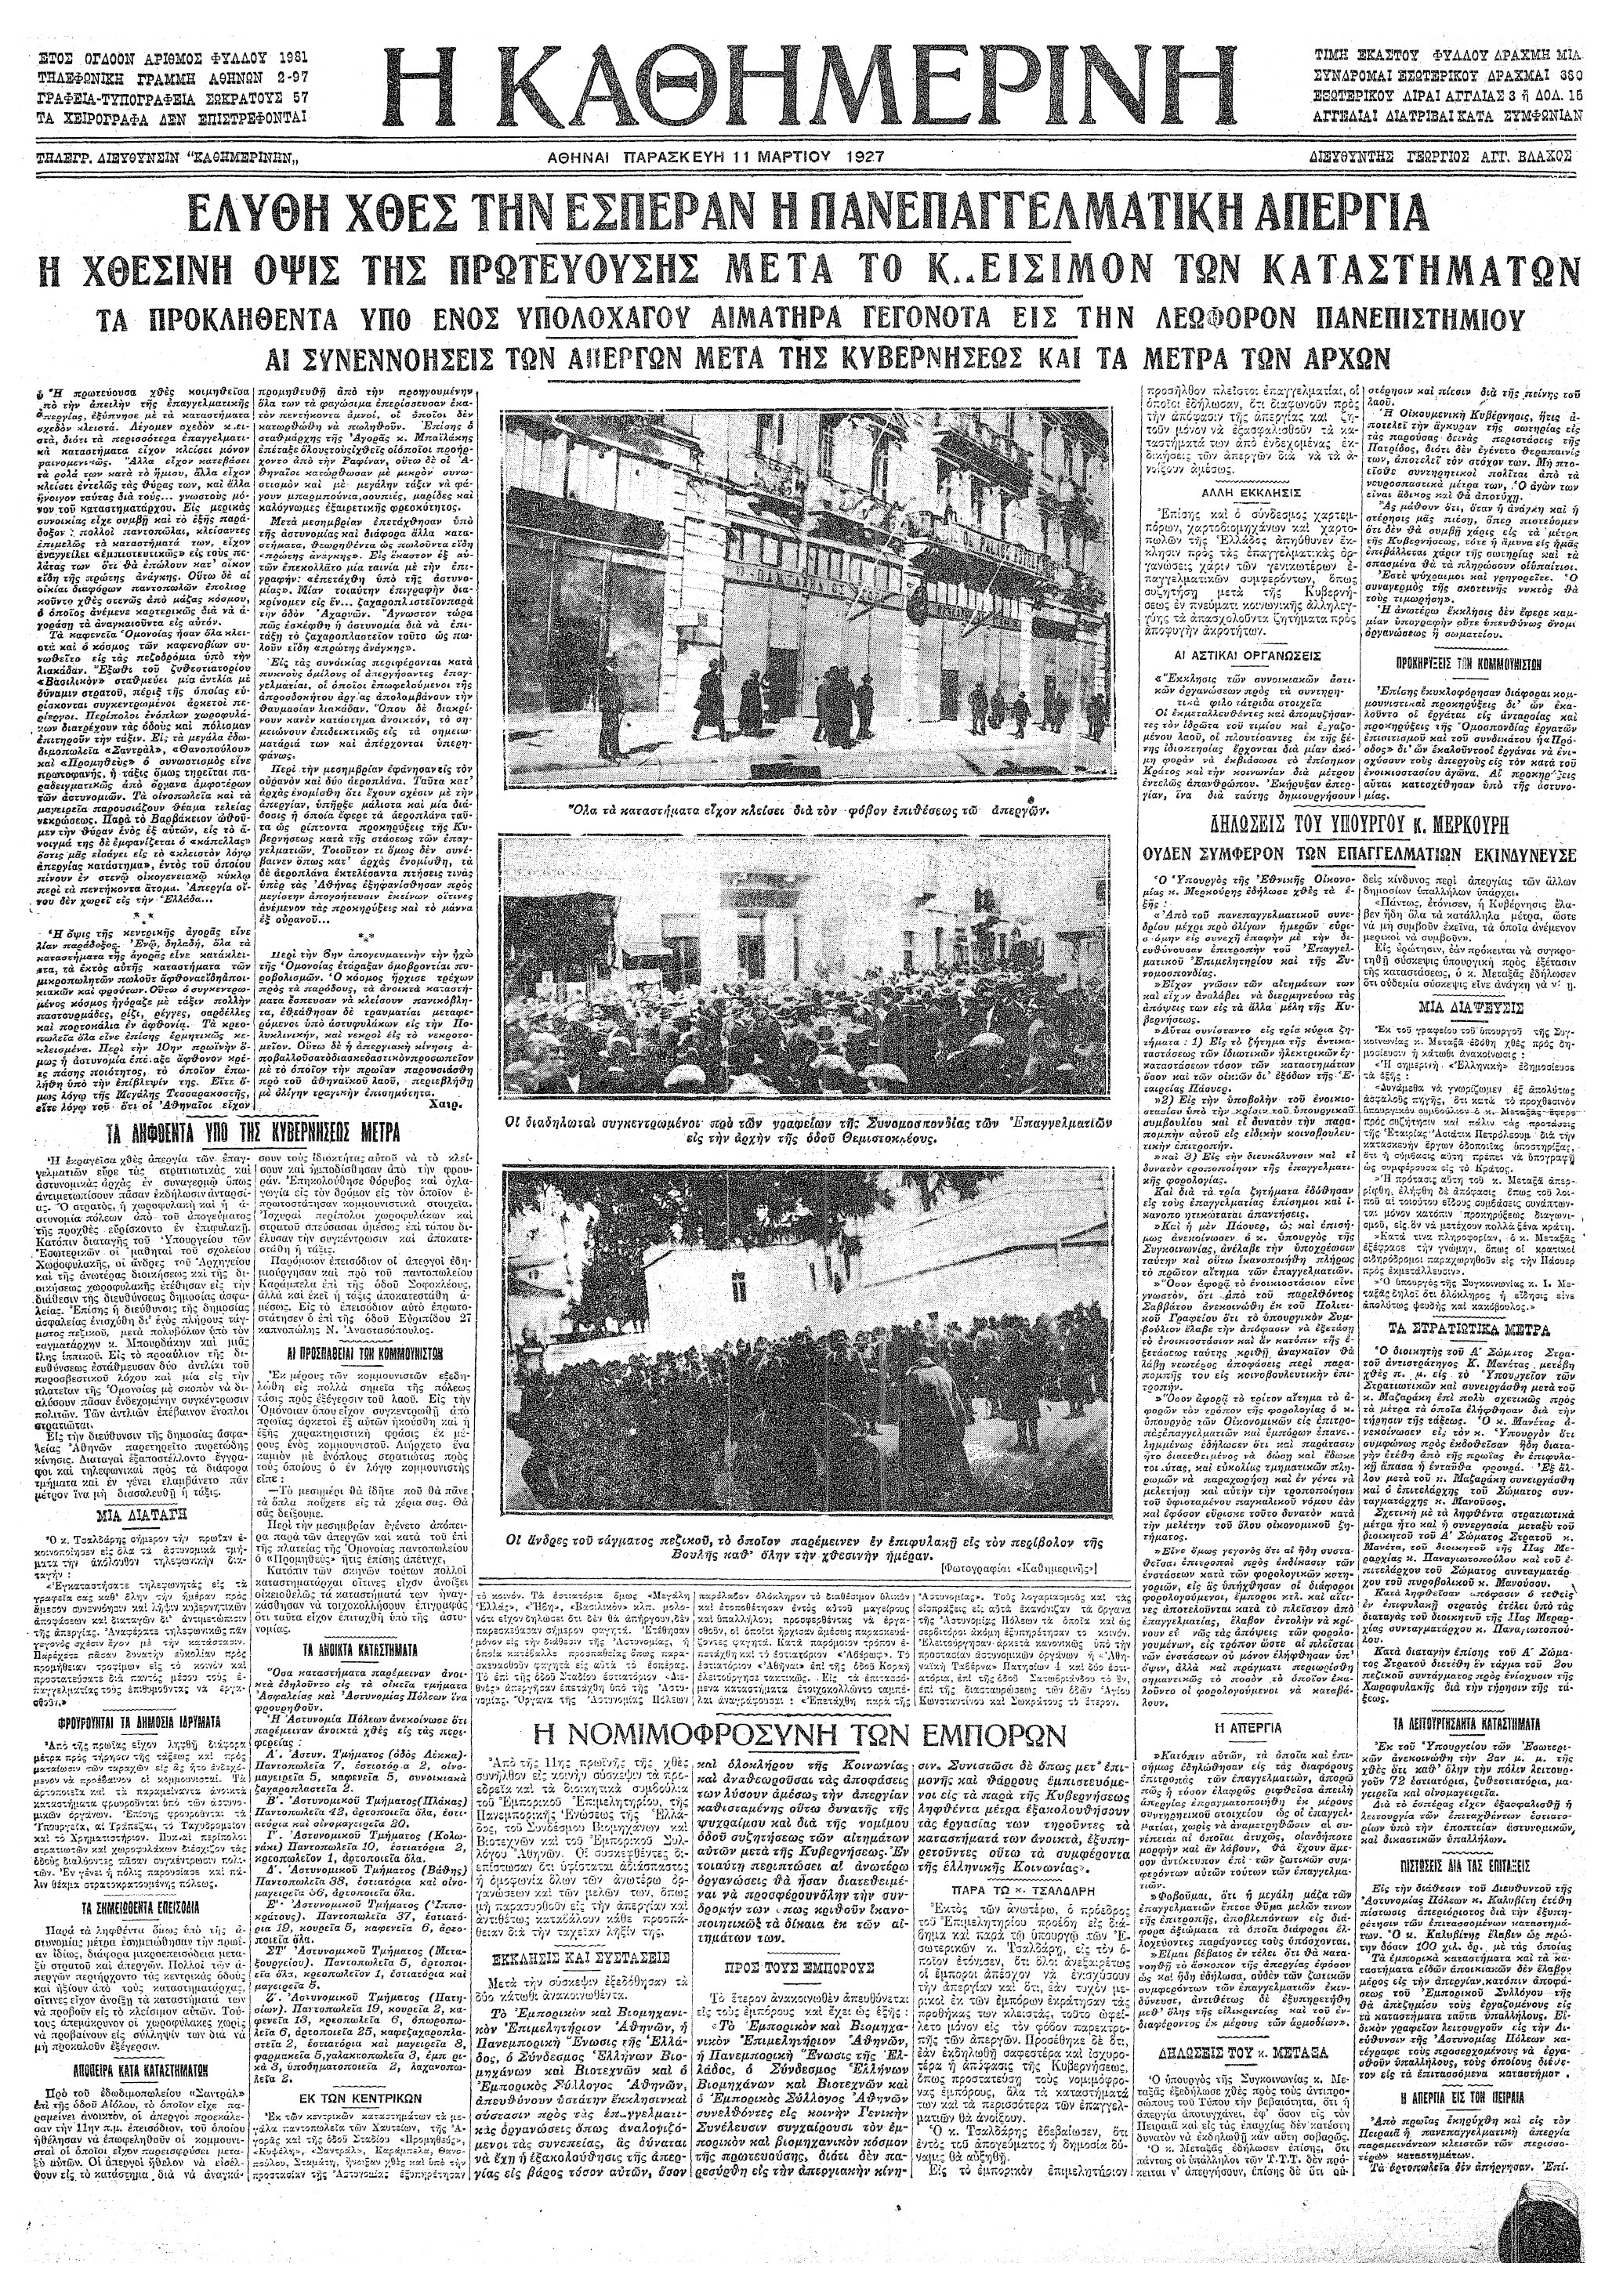 Σαν σήμερα: 10 Μαρτίου 1927 – «Ματωμένη Πέμπτη», η πρώτη μεγάλη πανεπαγγελματική απεργία-1